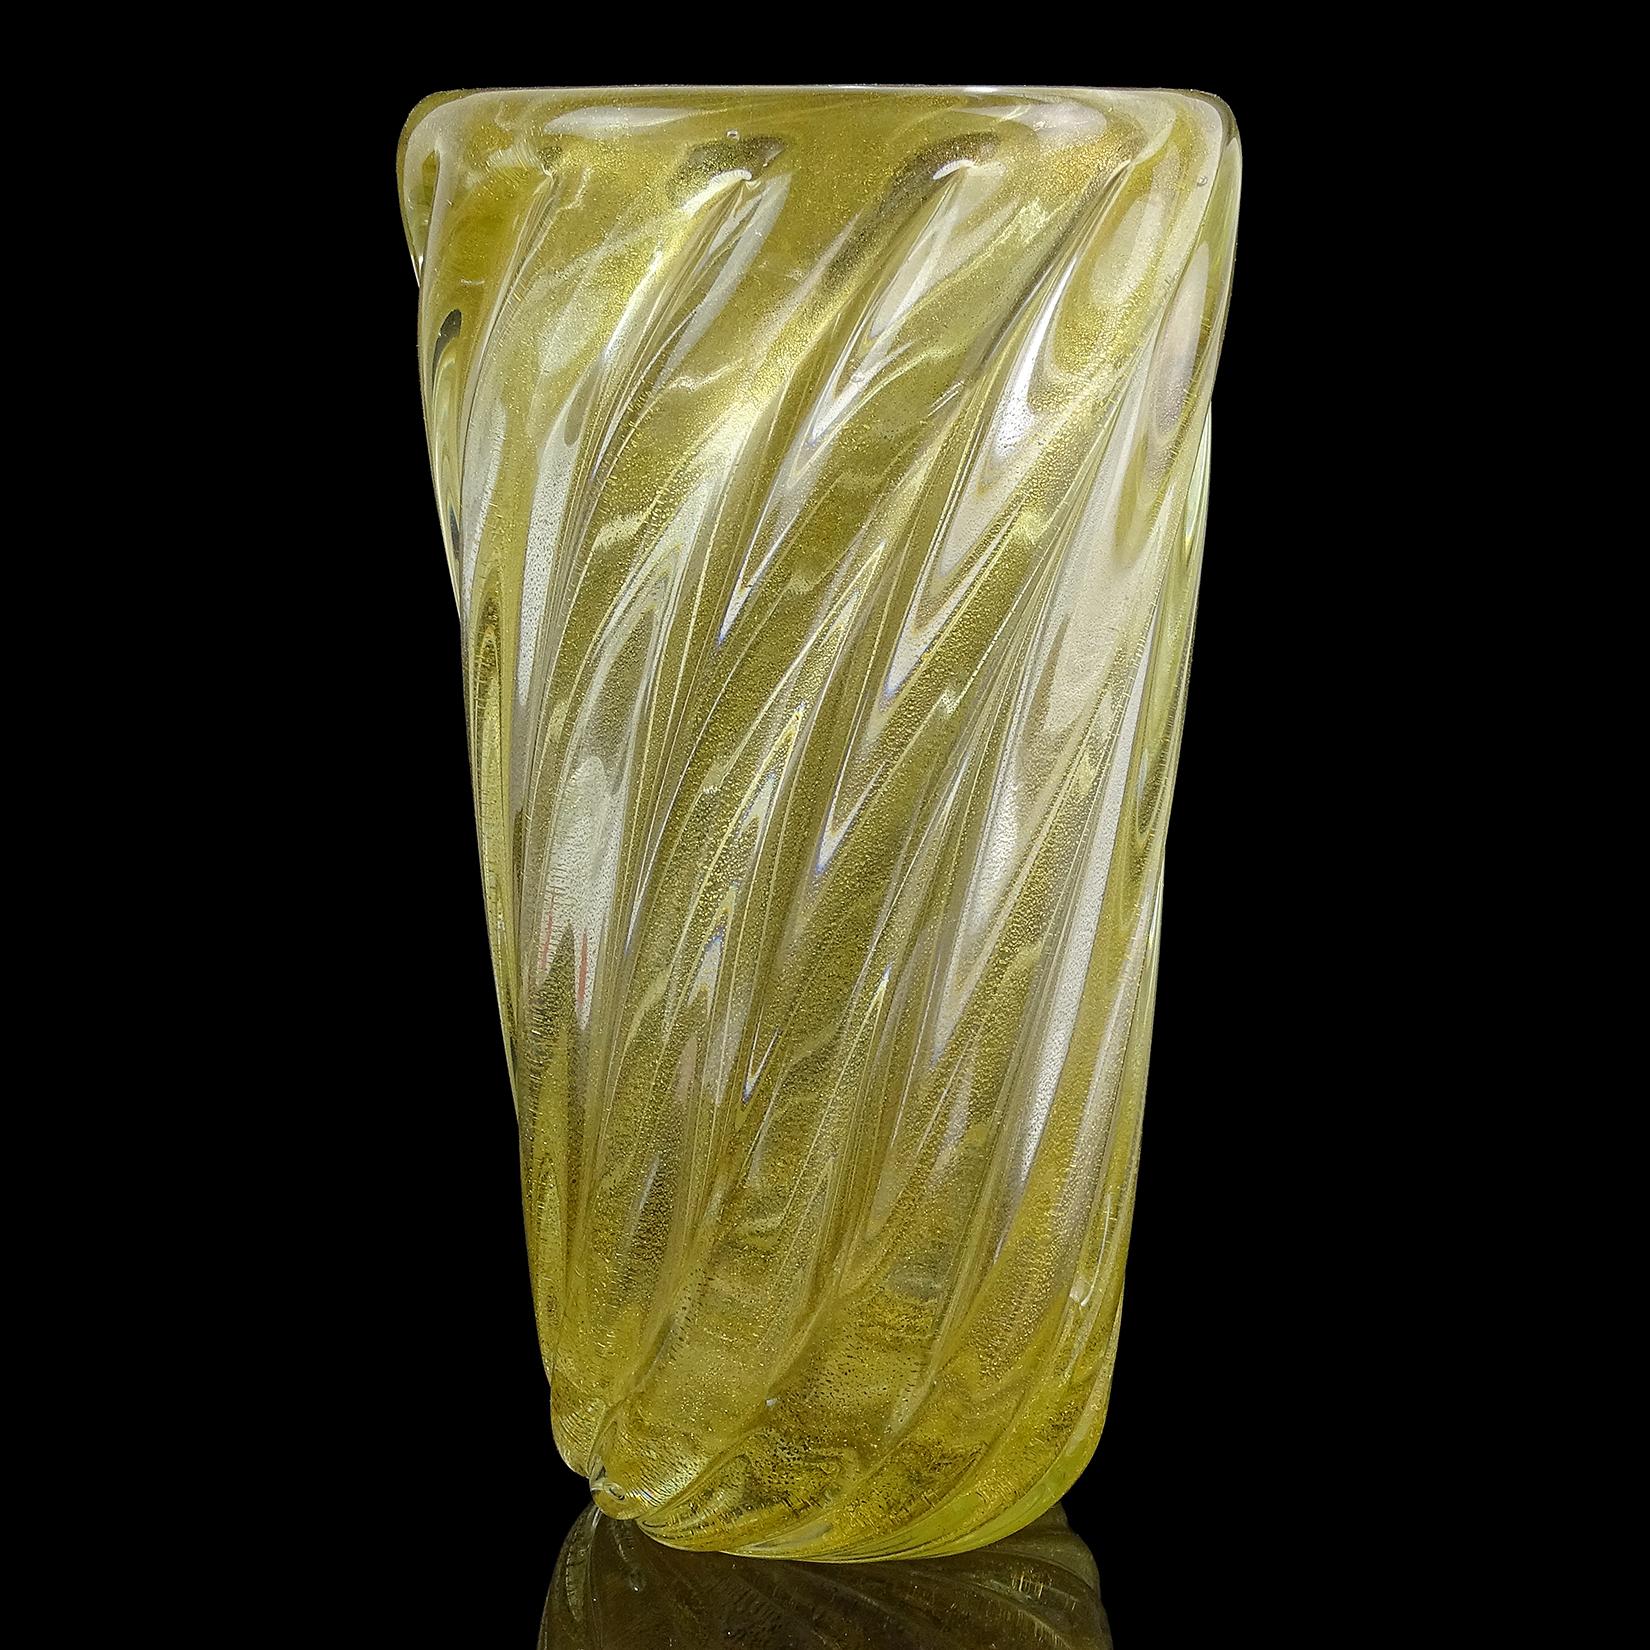 Magnifique vase en verre d'art italien soufflé à la main de Murano, avec des taches dorées. La pièce est abondamment recouverte de feuilles d'or, avec un motif nervuré. Fabriqué avec du verre très épais. Créé à la manière de l'entreprise Seguso